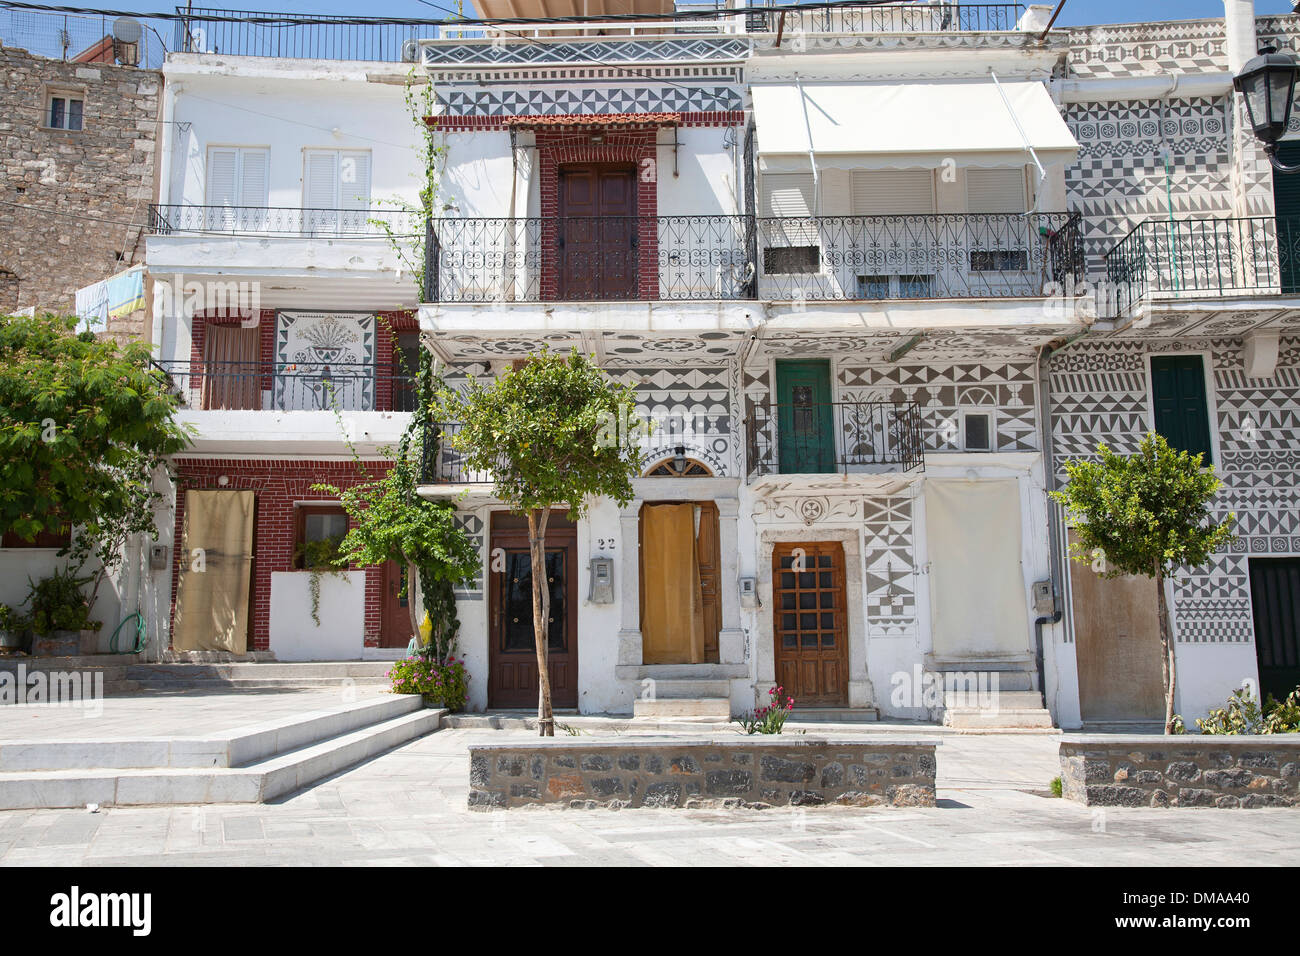 Village de Pyrgi, île de Chios, du nord-est de la mer Égée, Grèce, Europe Banque D'Images